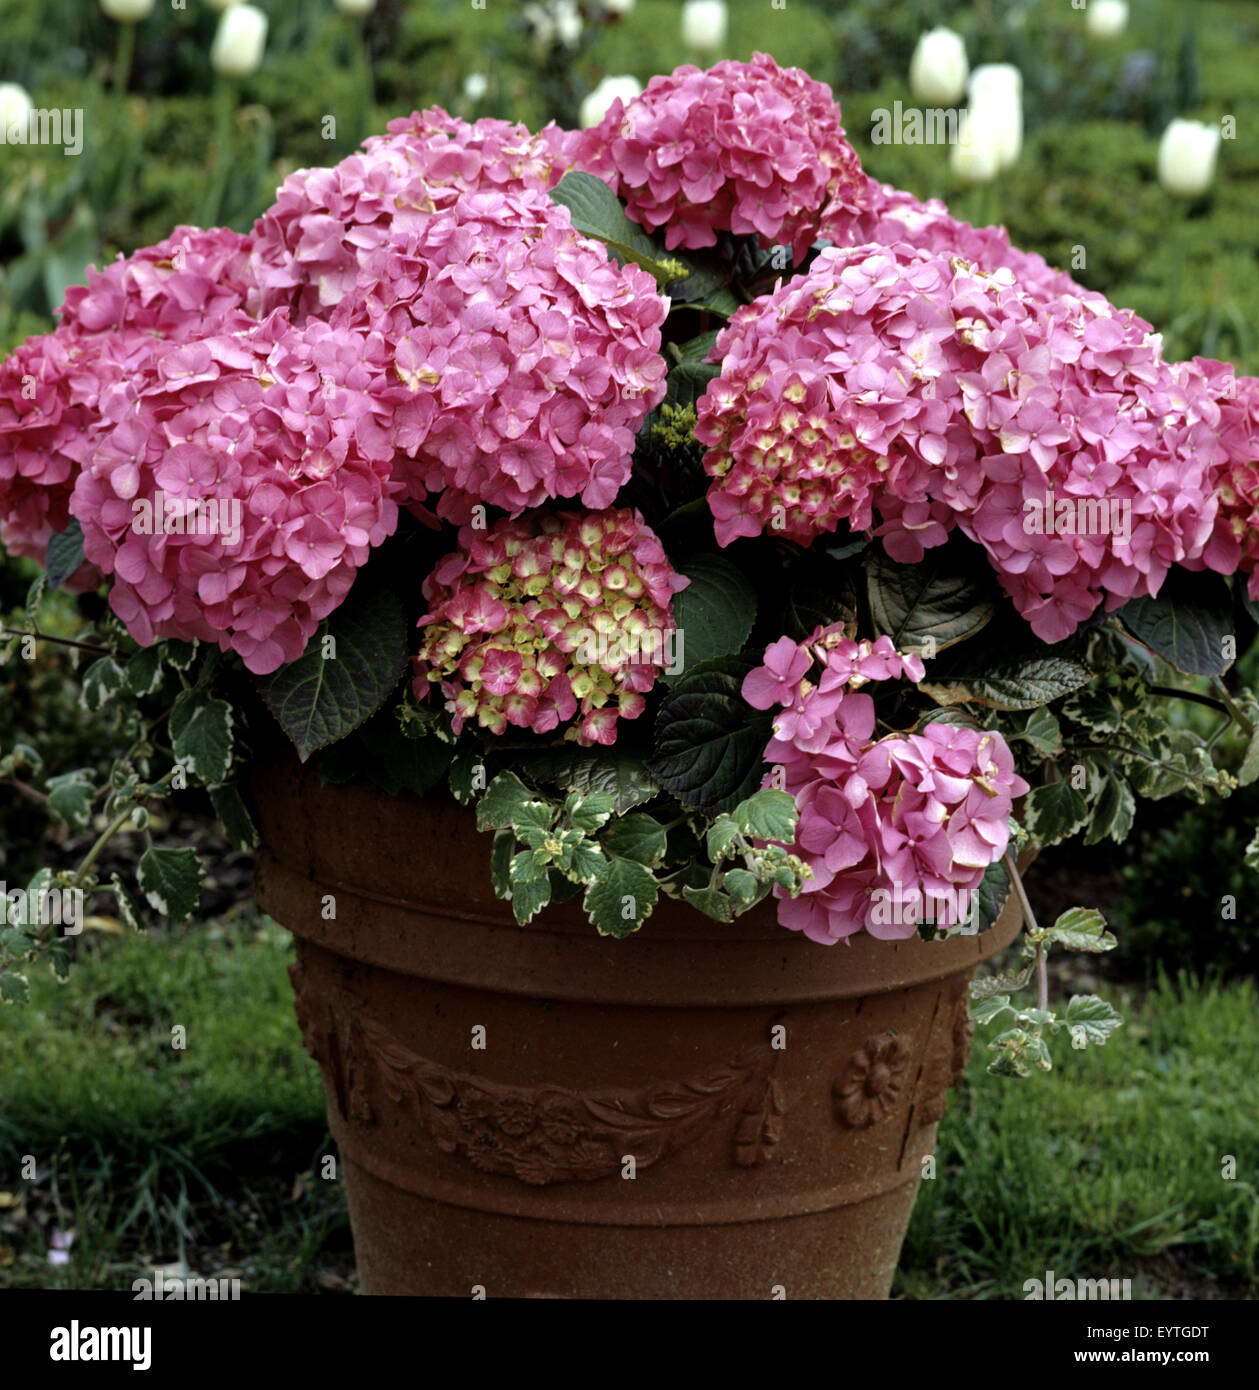 Hortensie, Balkonblumen, Blumen auf Terrasse, Gartenblumen, Kübelpflanzen,  Hydrangea Stock Photo - Alamy